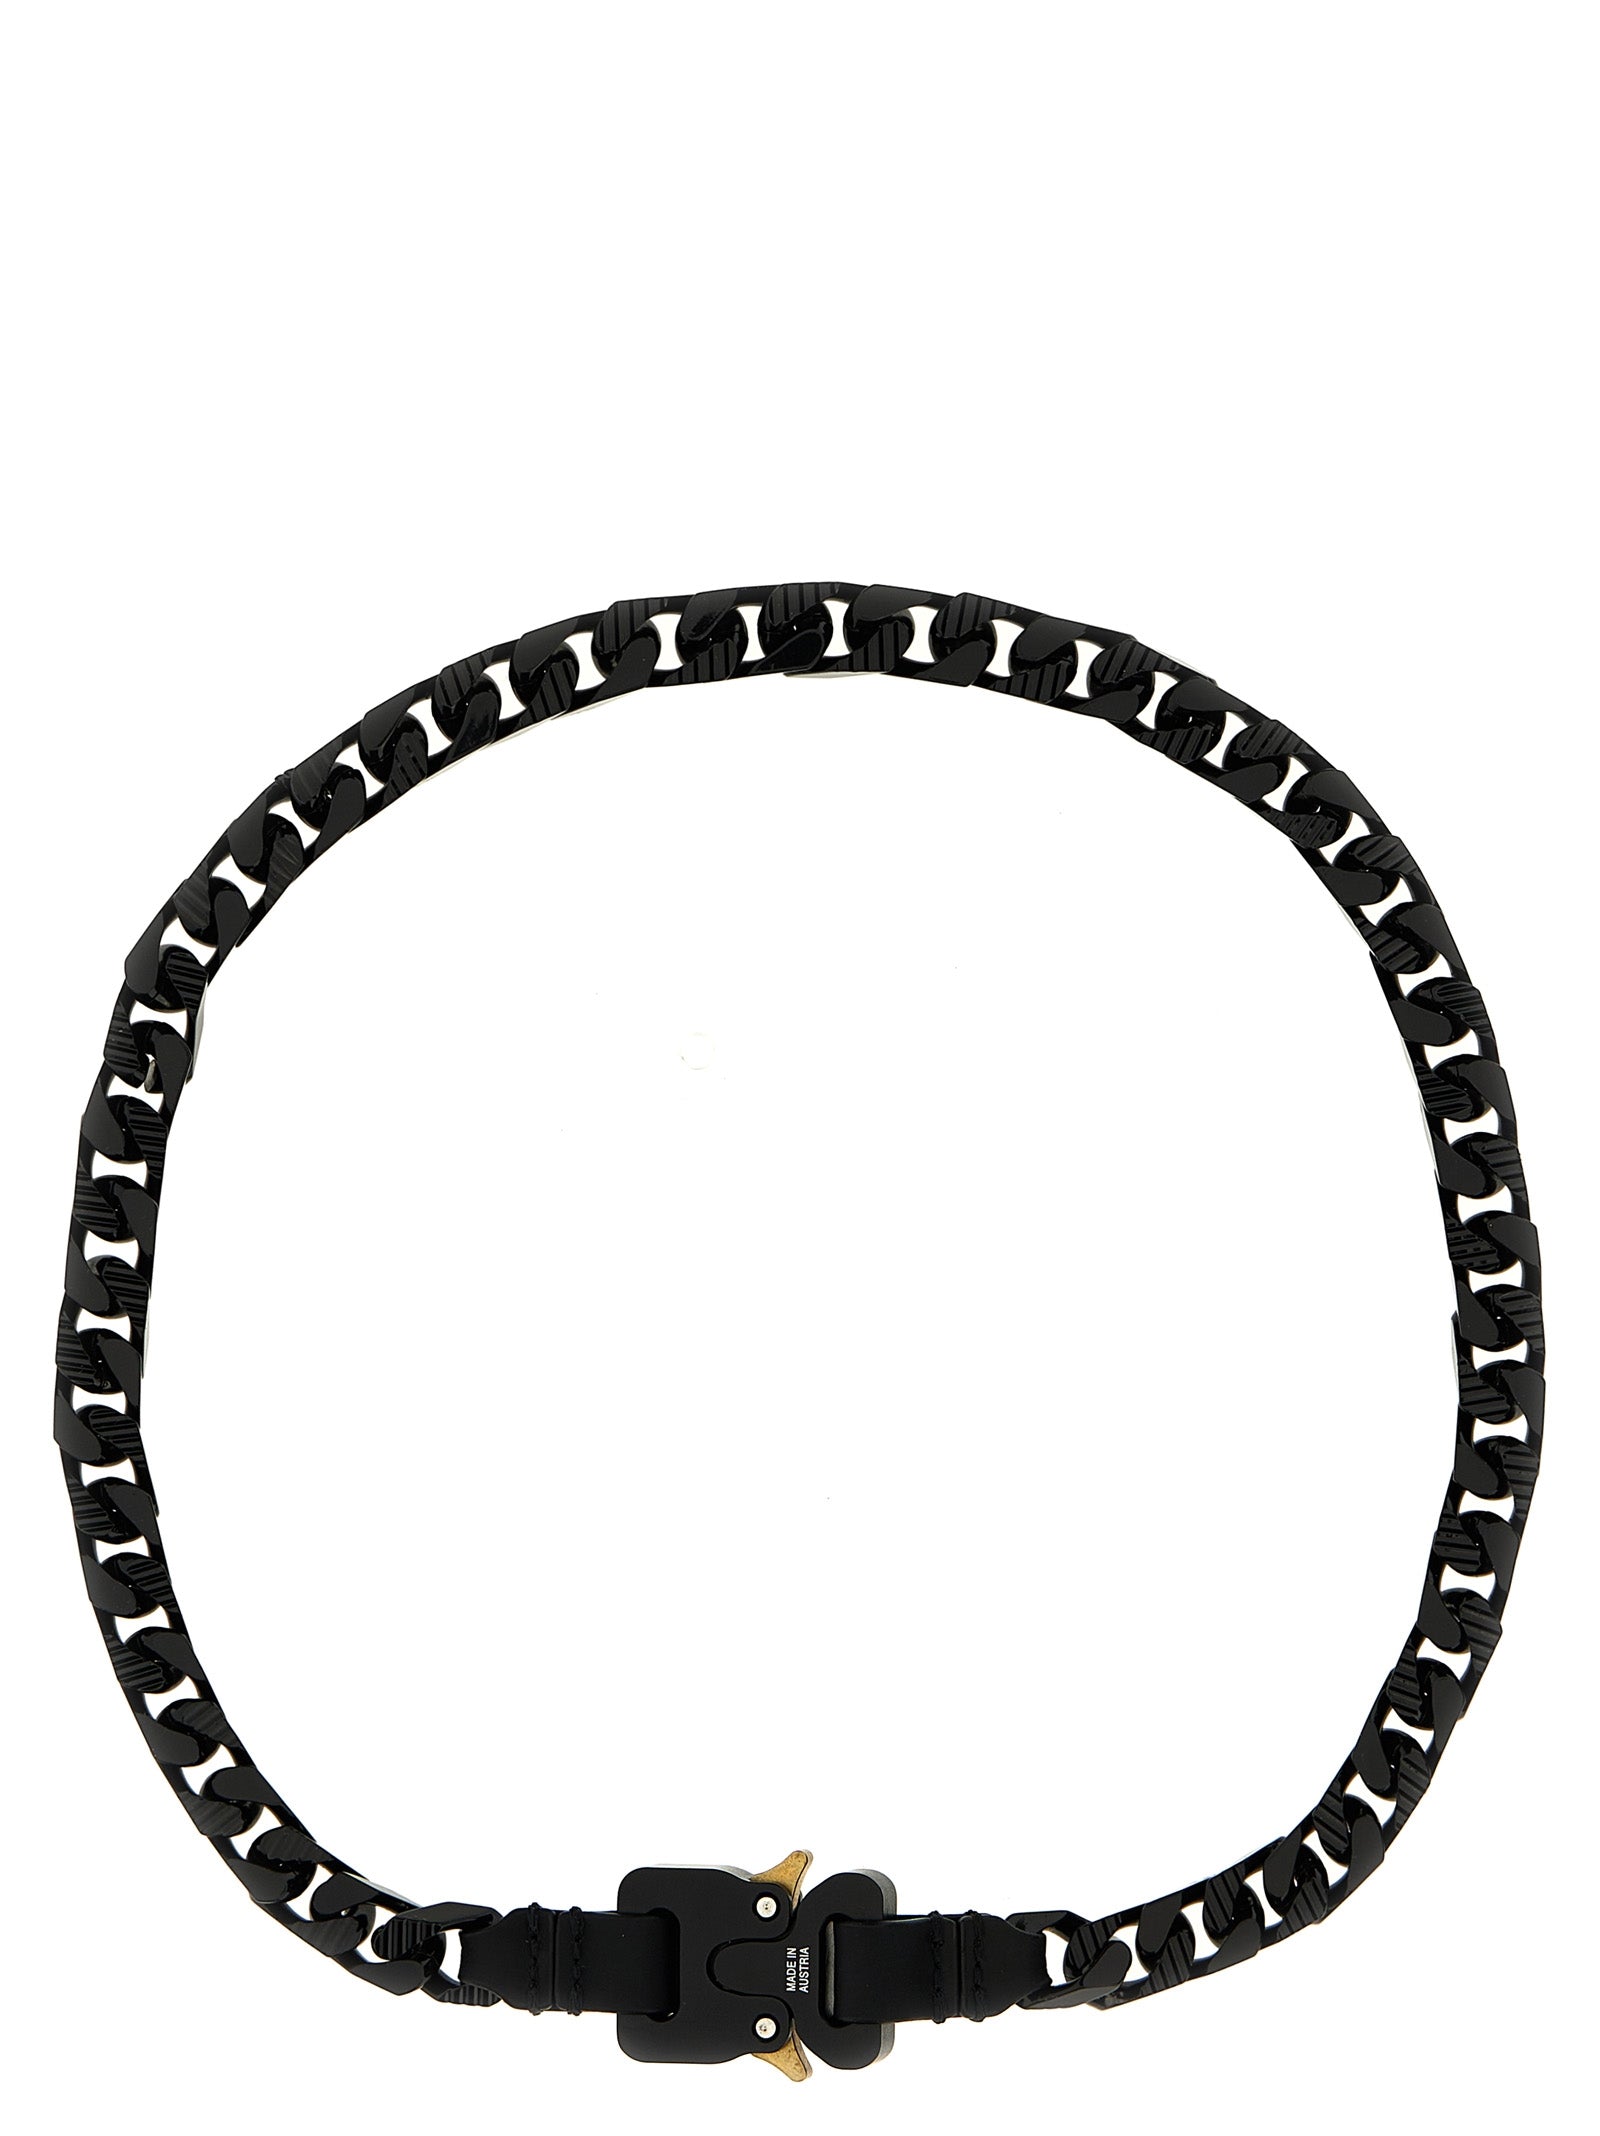 Shop 1017 Alyx 9 Sm Colored Chain Jewelry Black